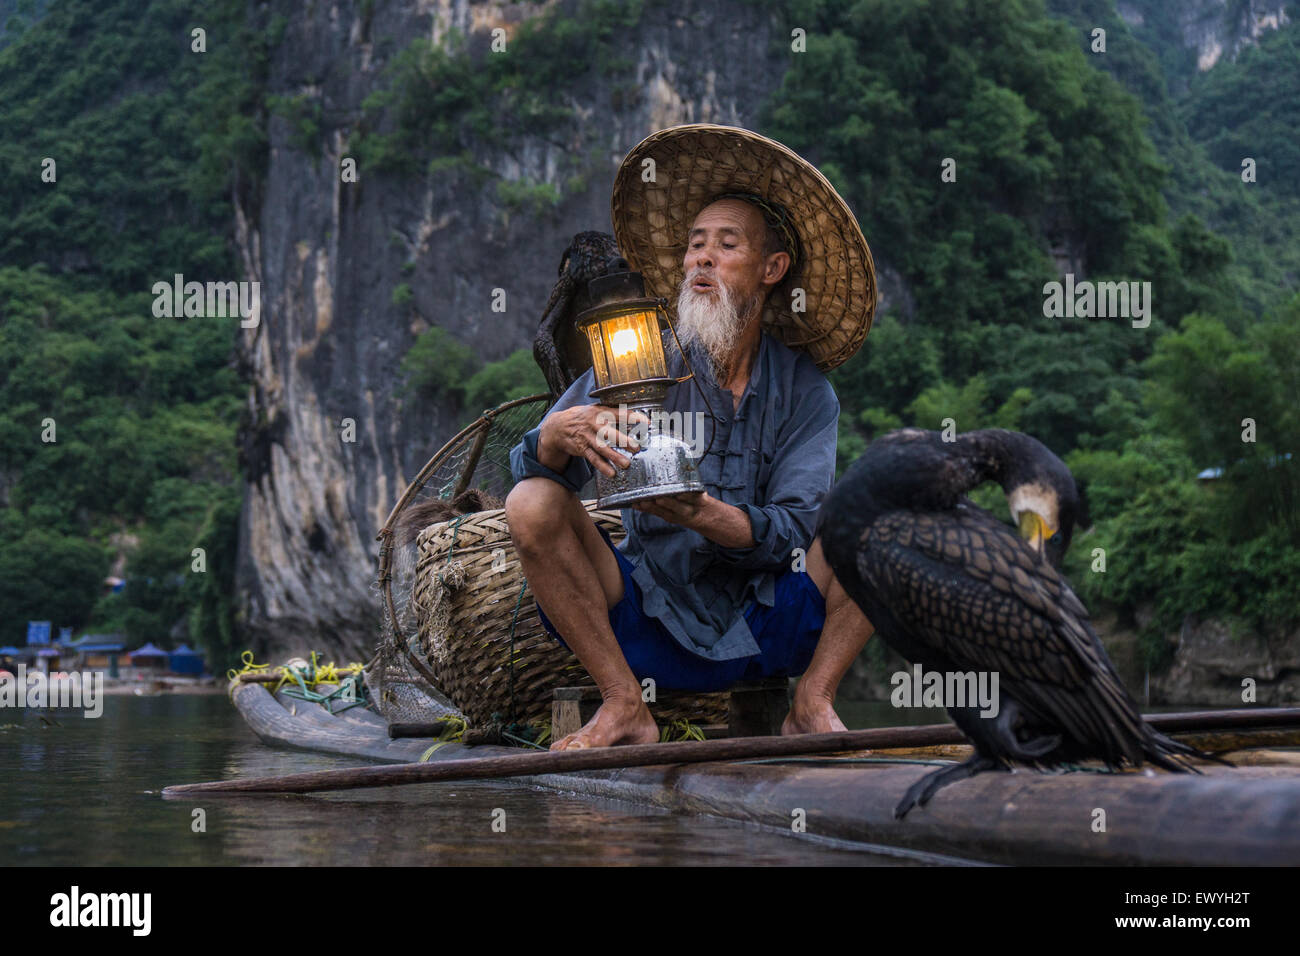 Kormoran Fischer auf einem Floß hält eine Laterne, Guilin, China Stockfoto